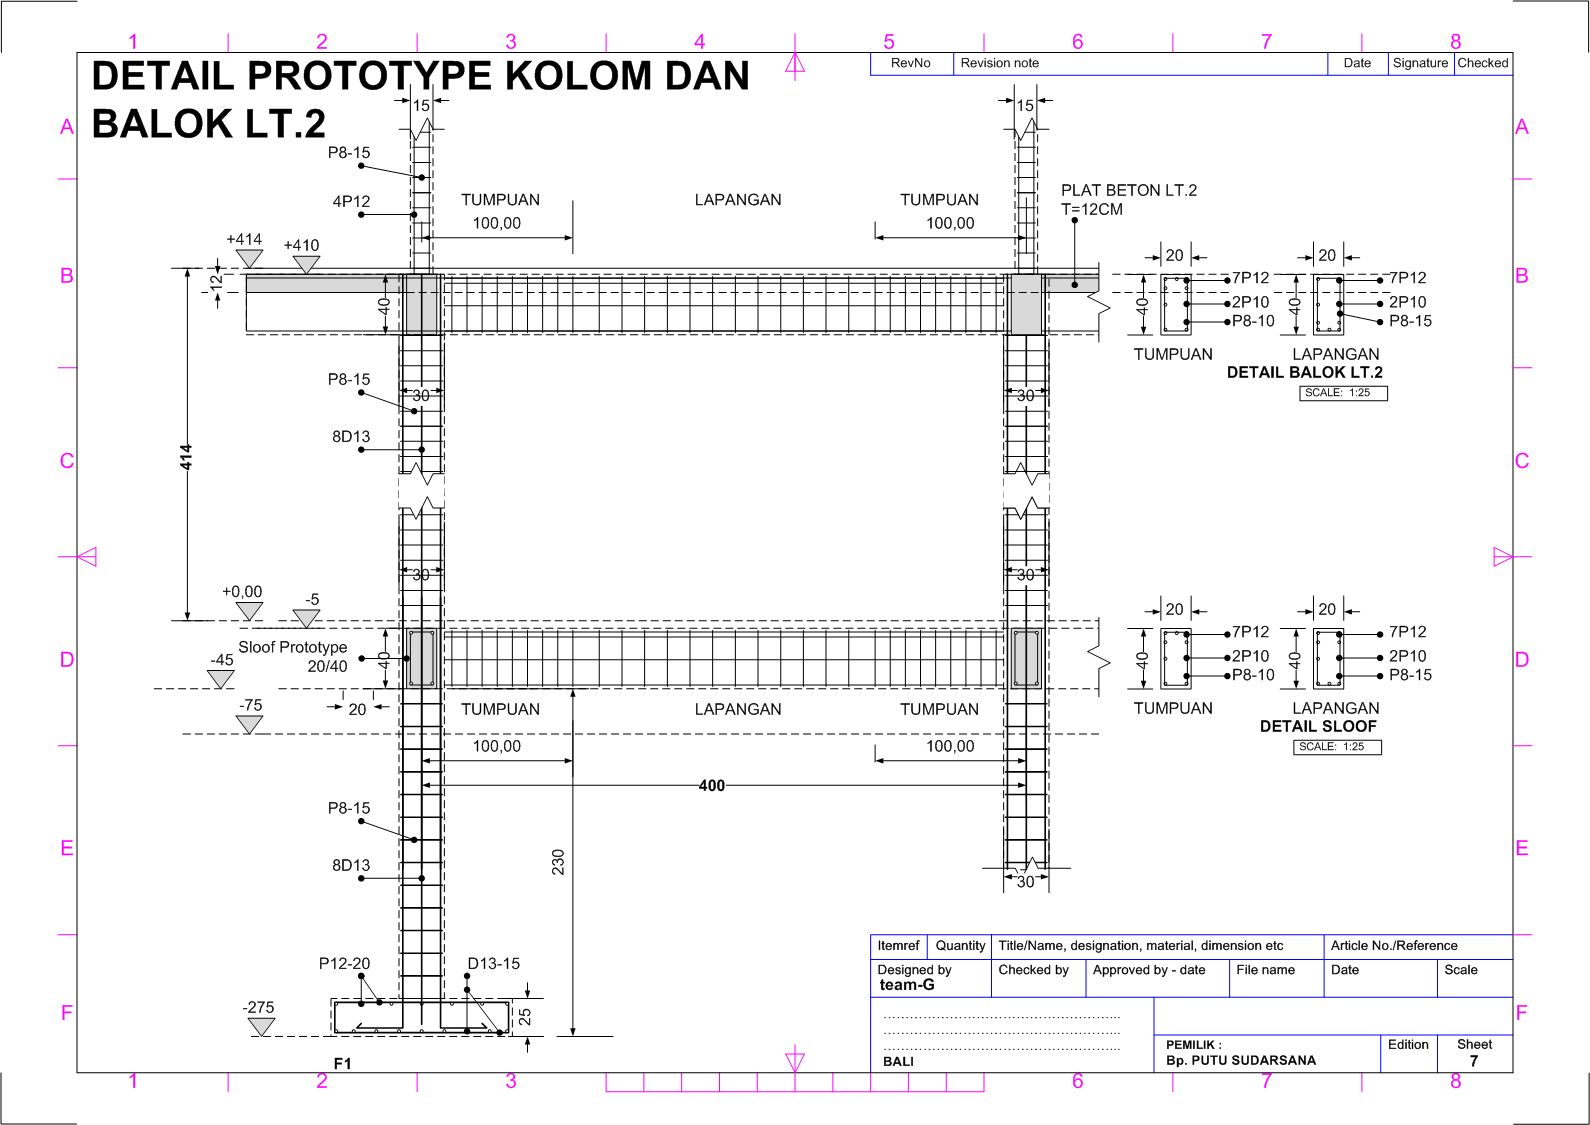 Rumah Tinggal di Bali PS B 03 Rencana Pondasi dan Beton